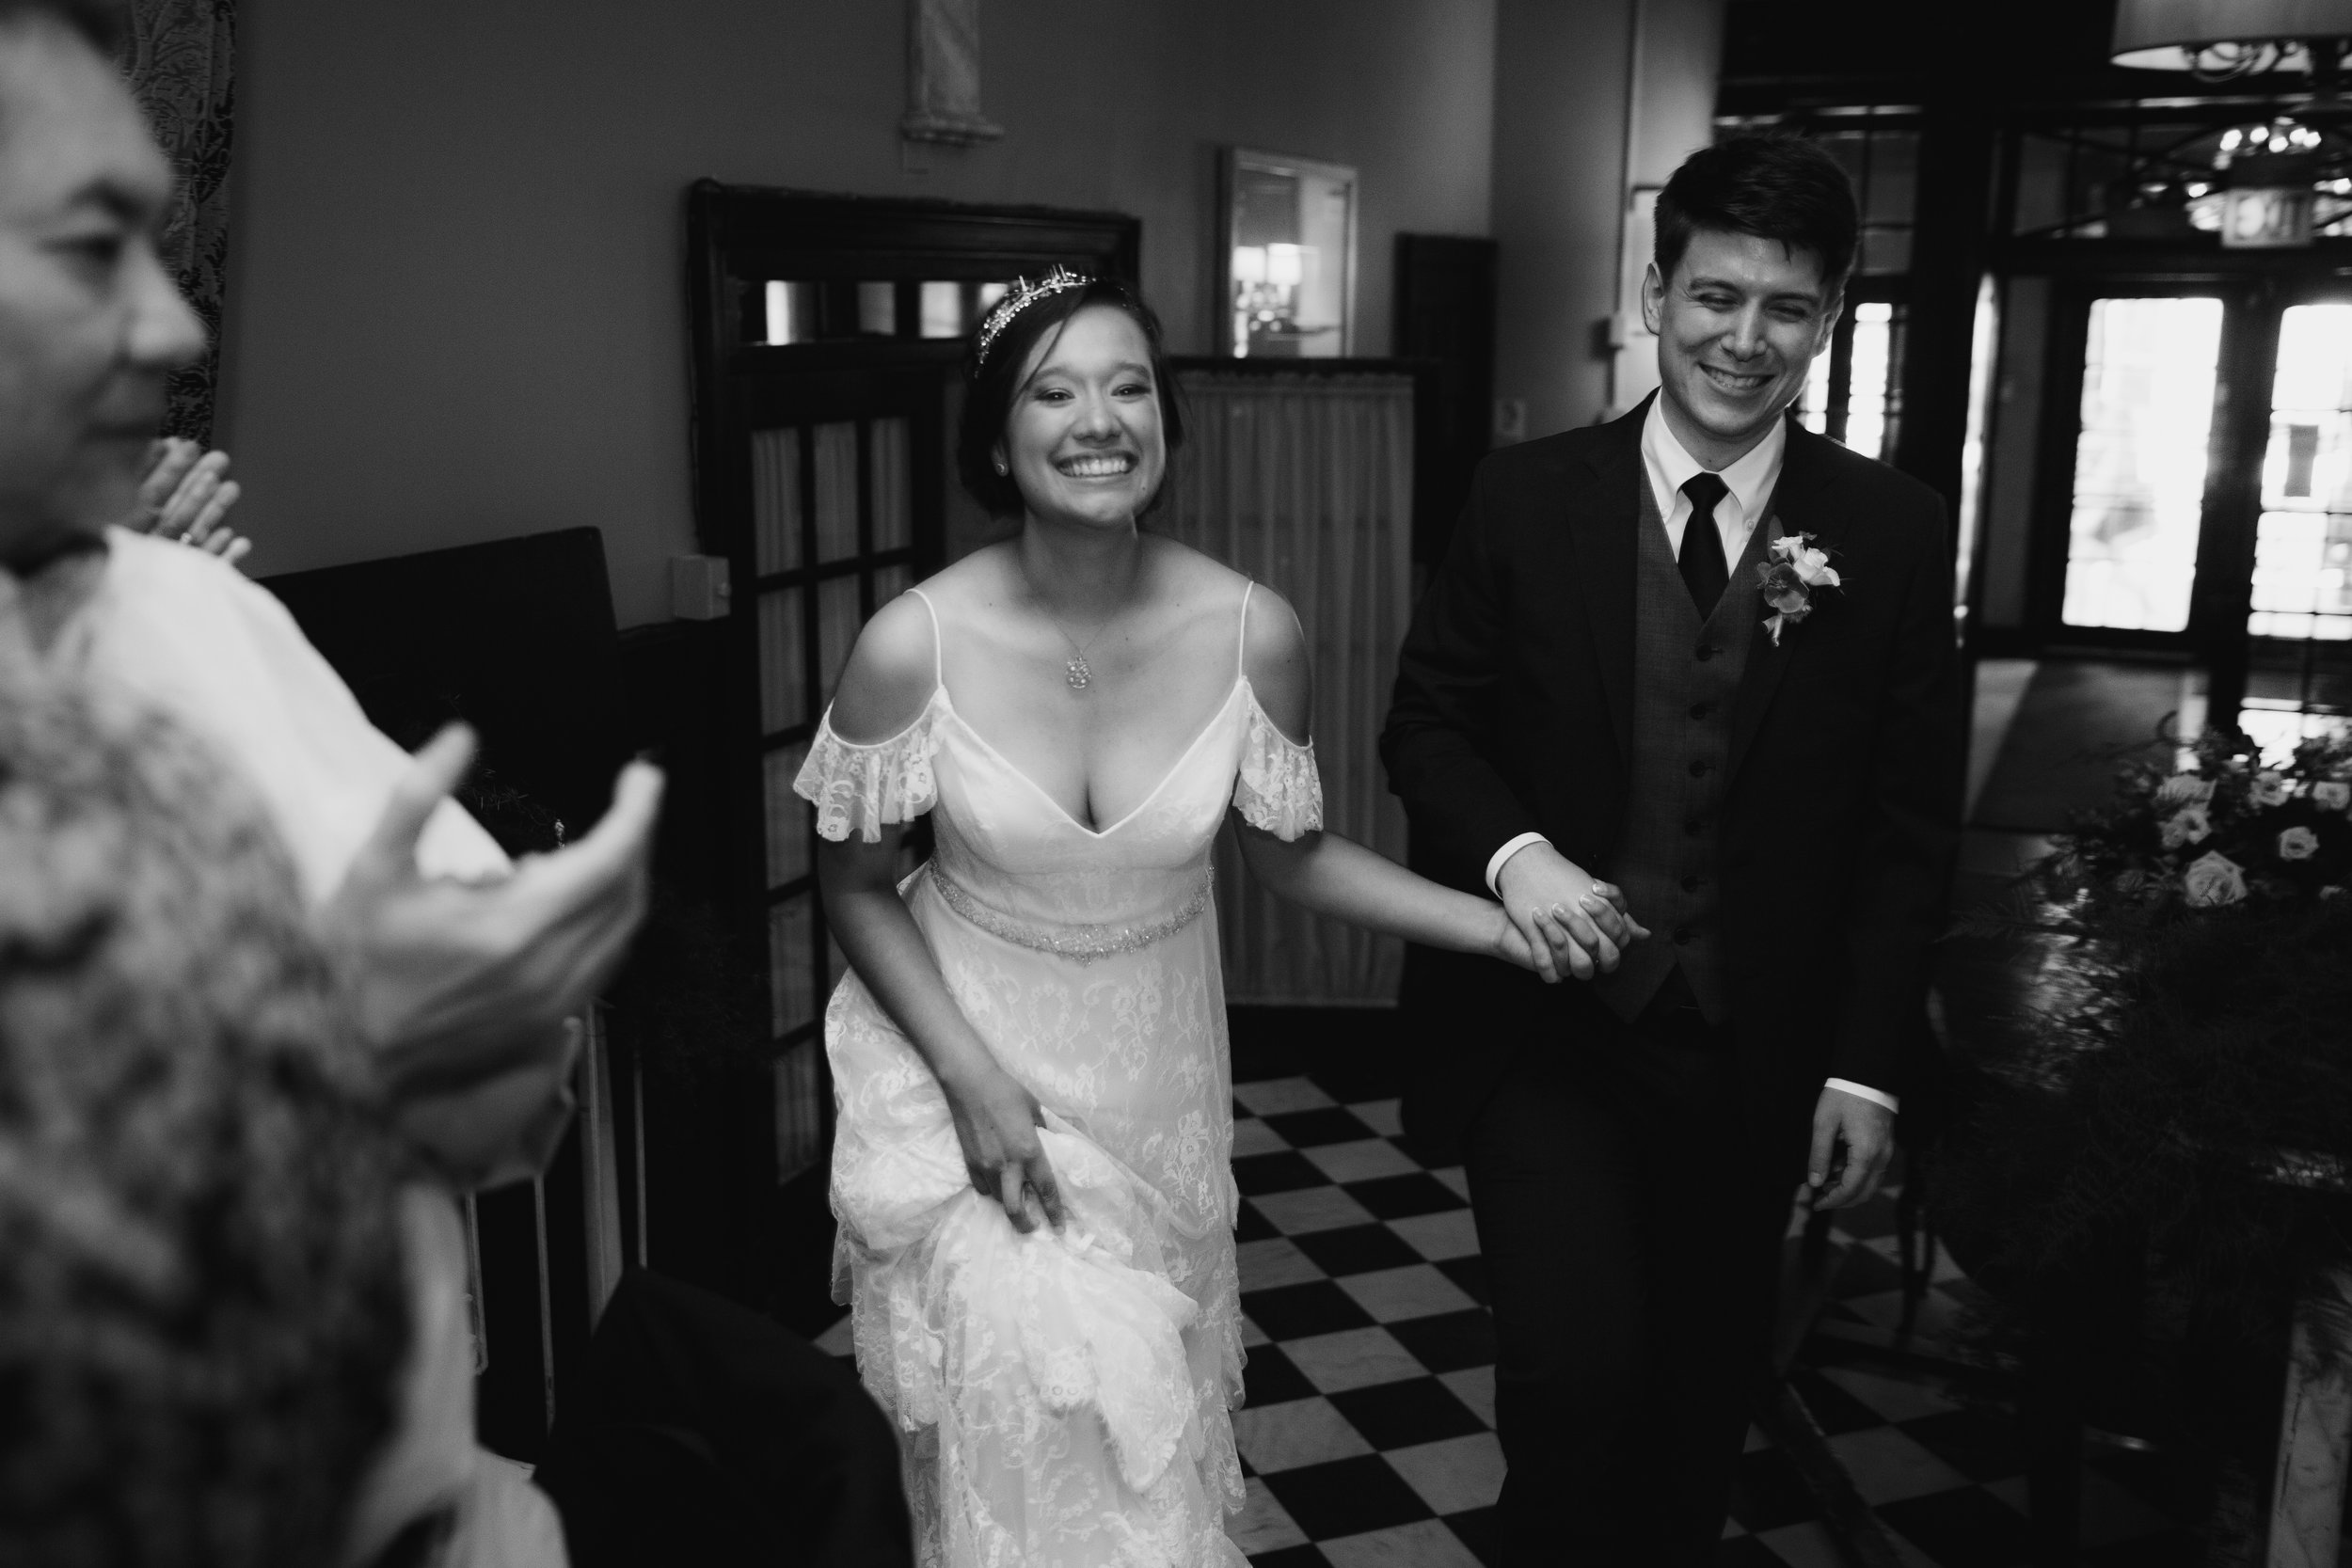 Your Day by MK - Kenna & Daniel: Salvatore's Chicago Intimate Wedding